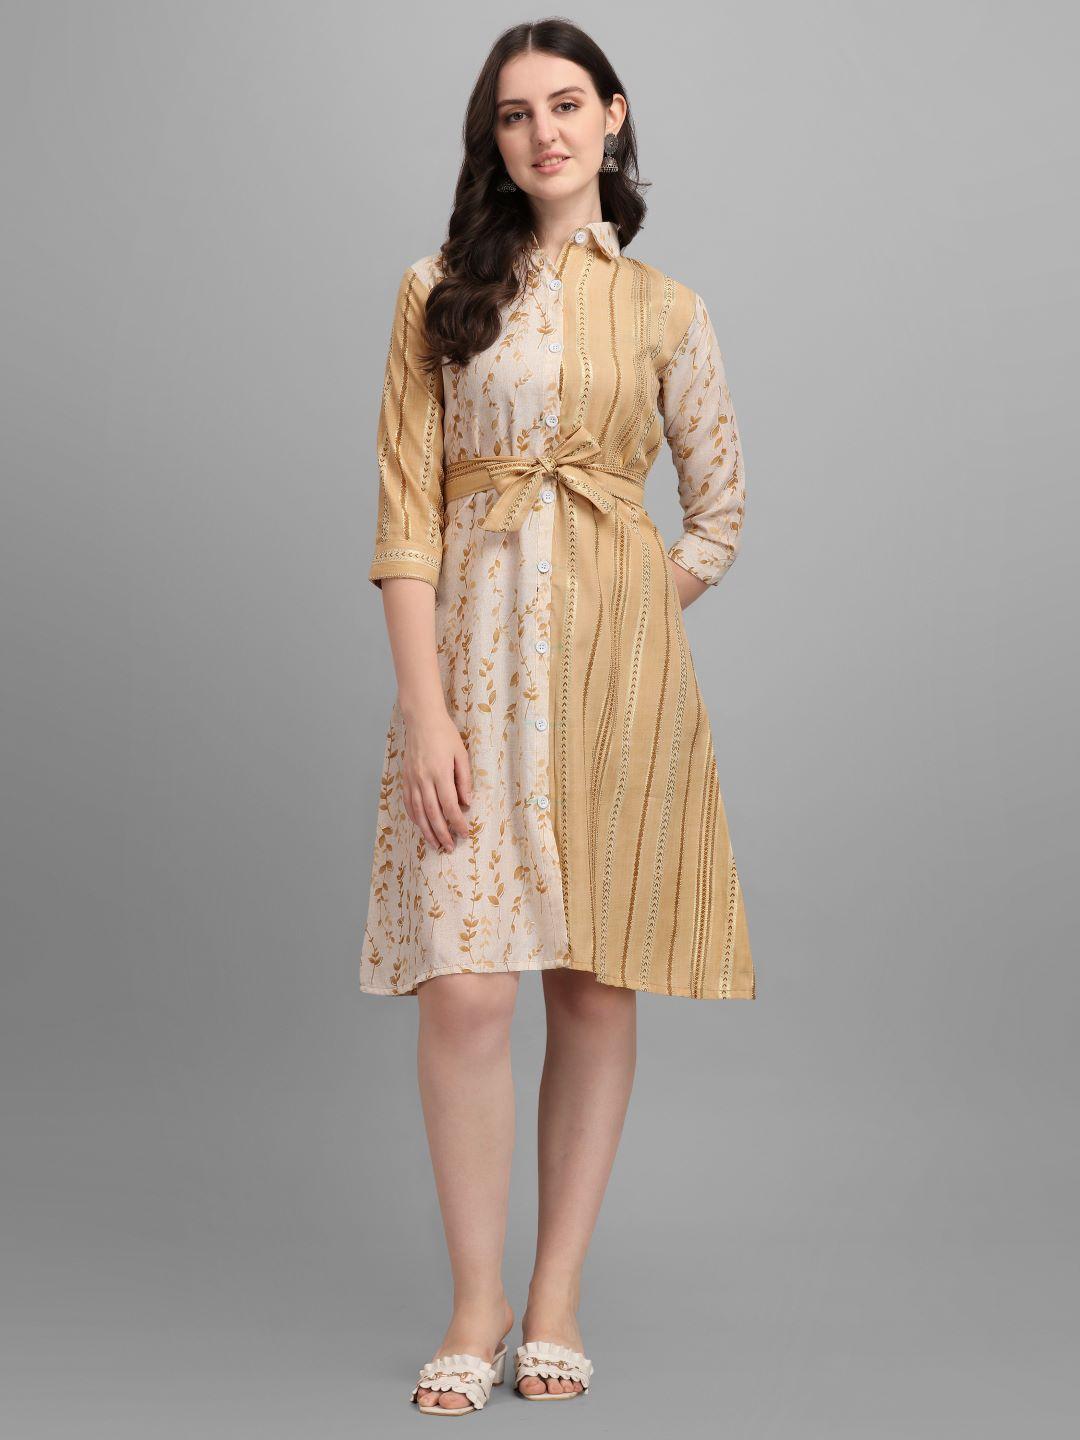 gufrina beige floral dress